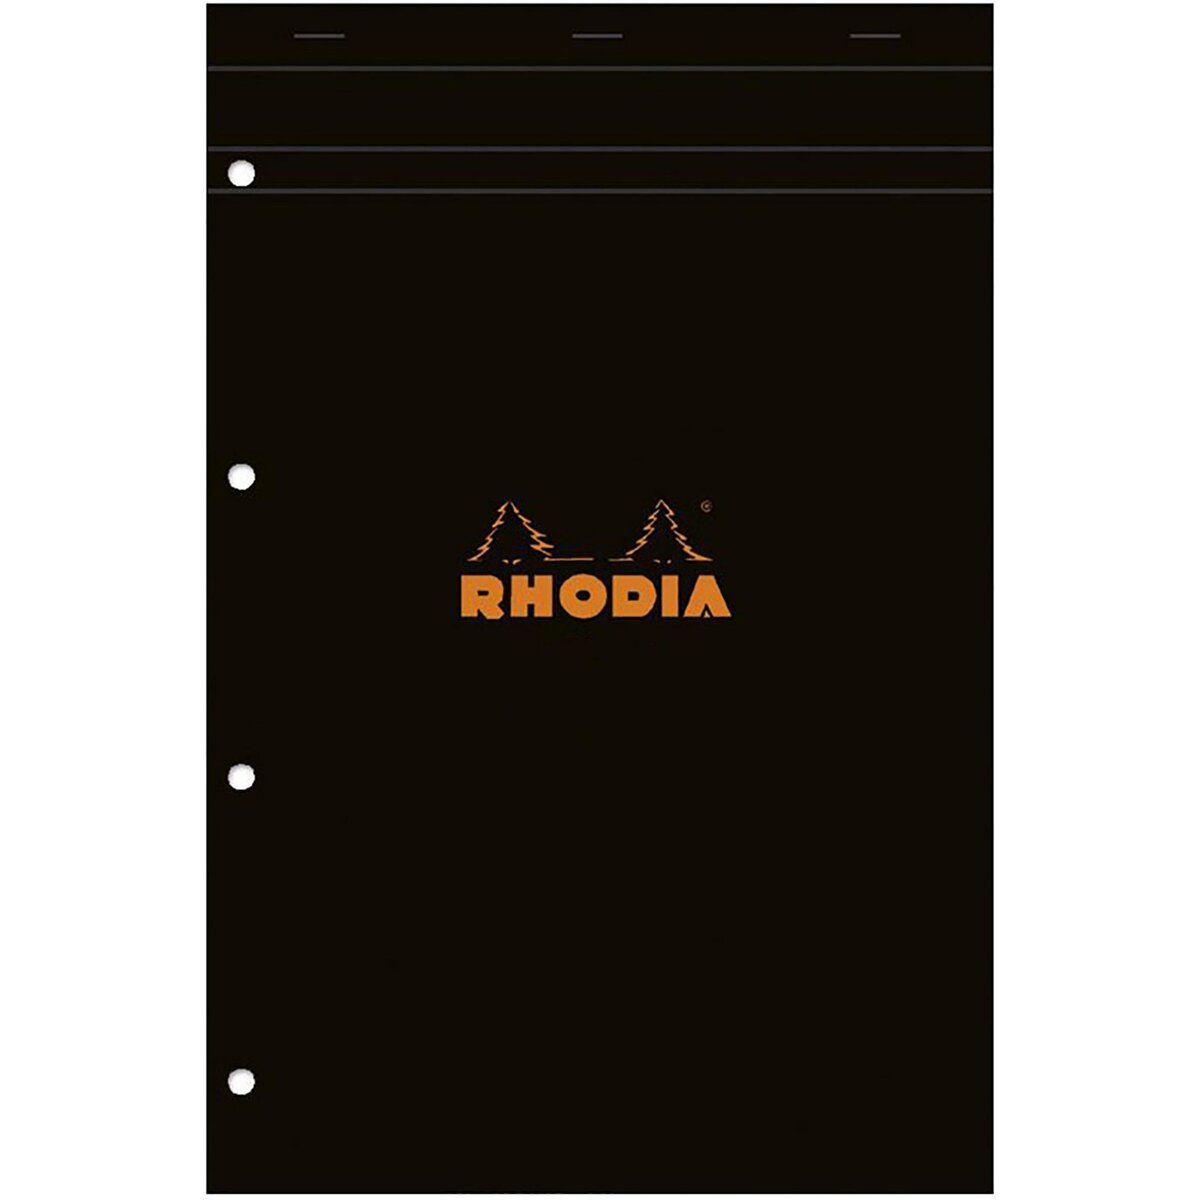 RHODIA Bloc notes 21x31.8cm - 160 pages - Grands carreaux Seyes - noir